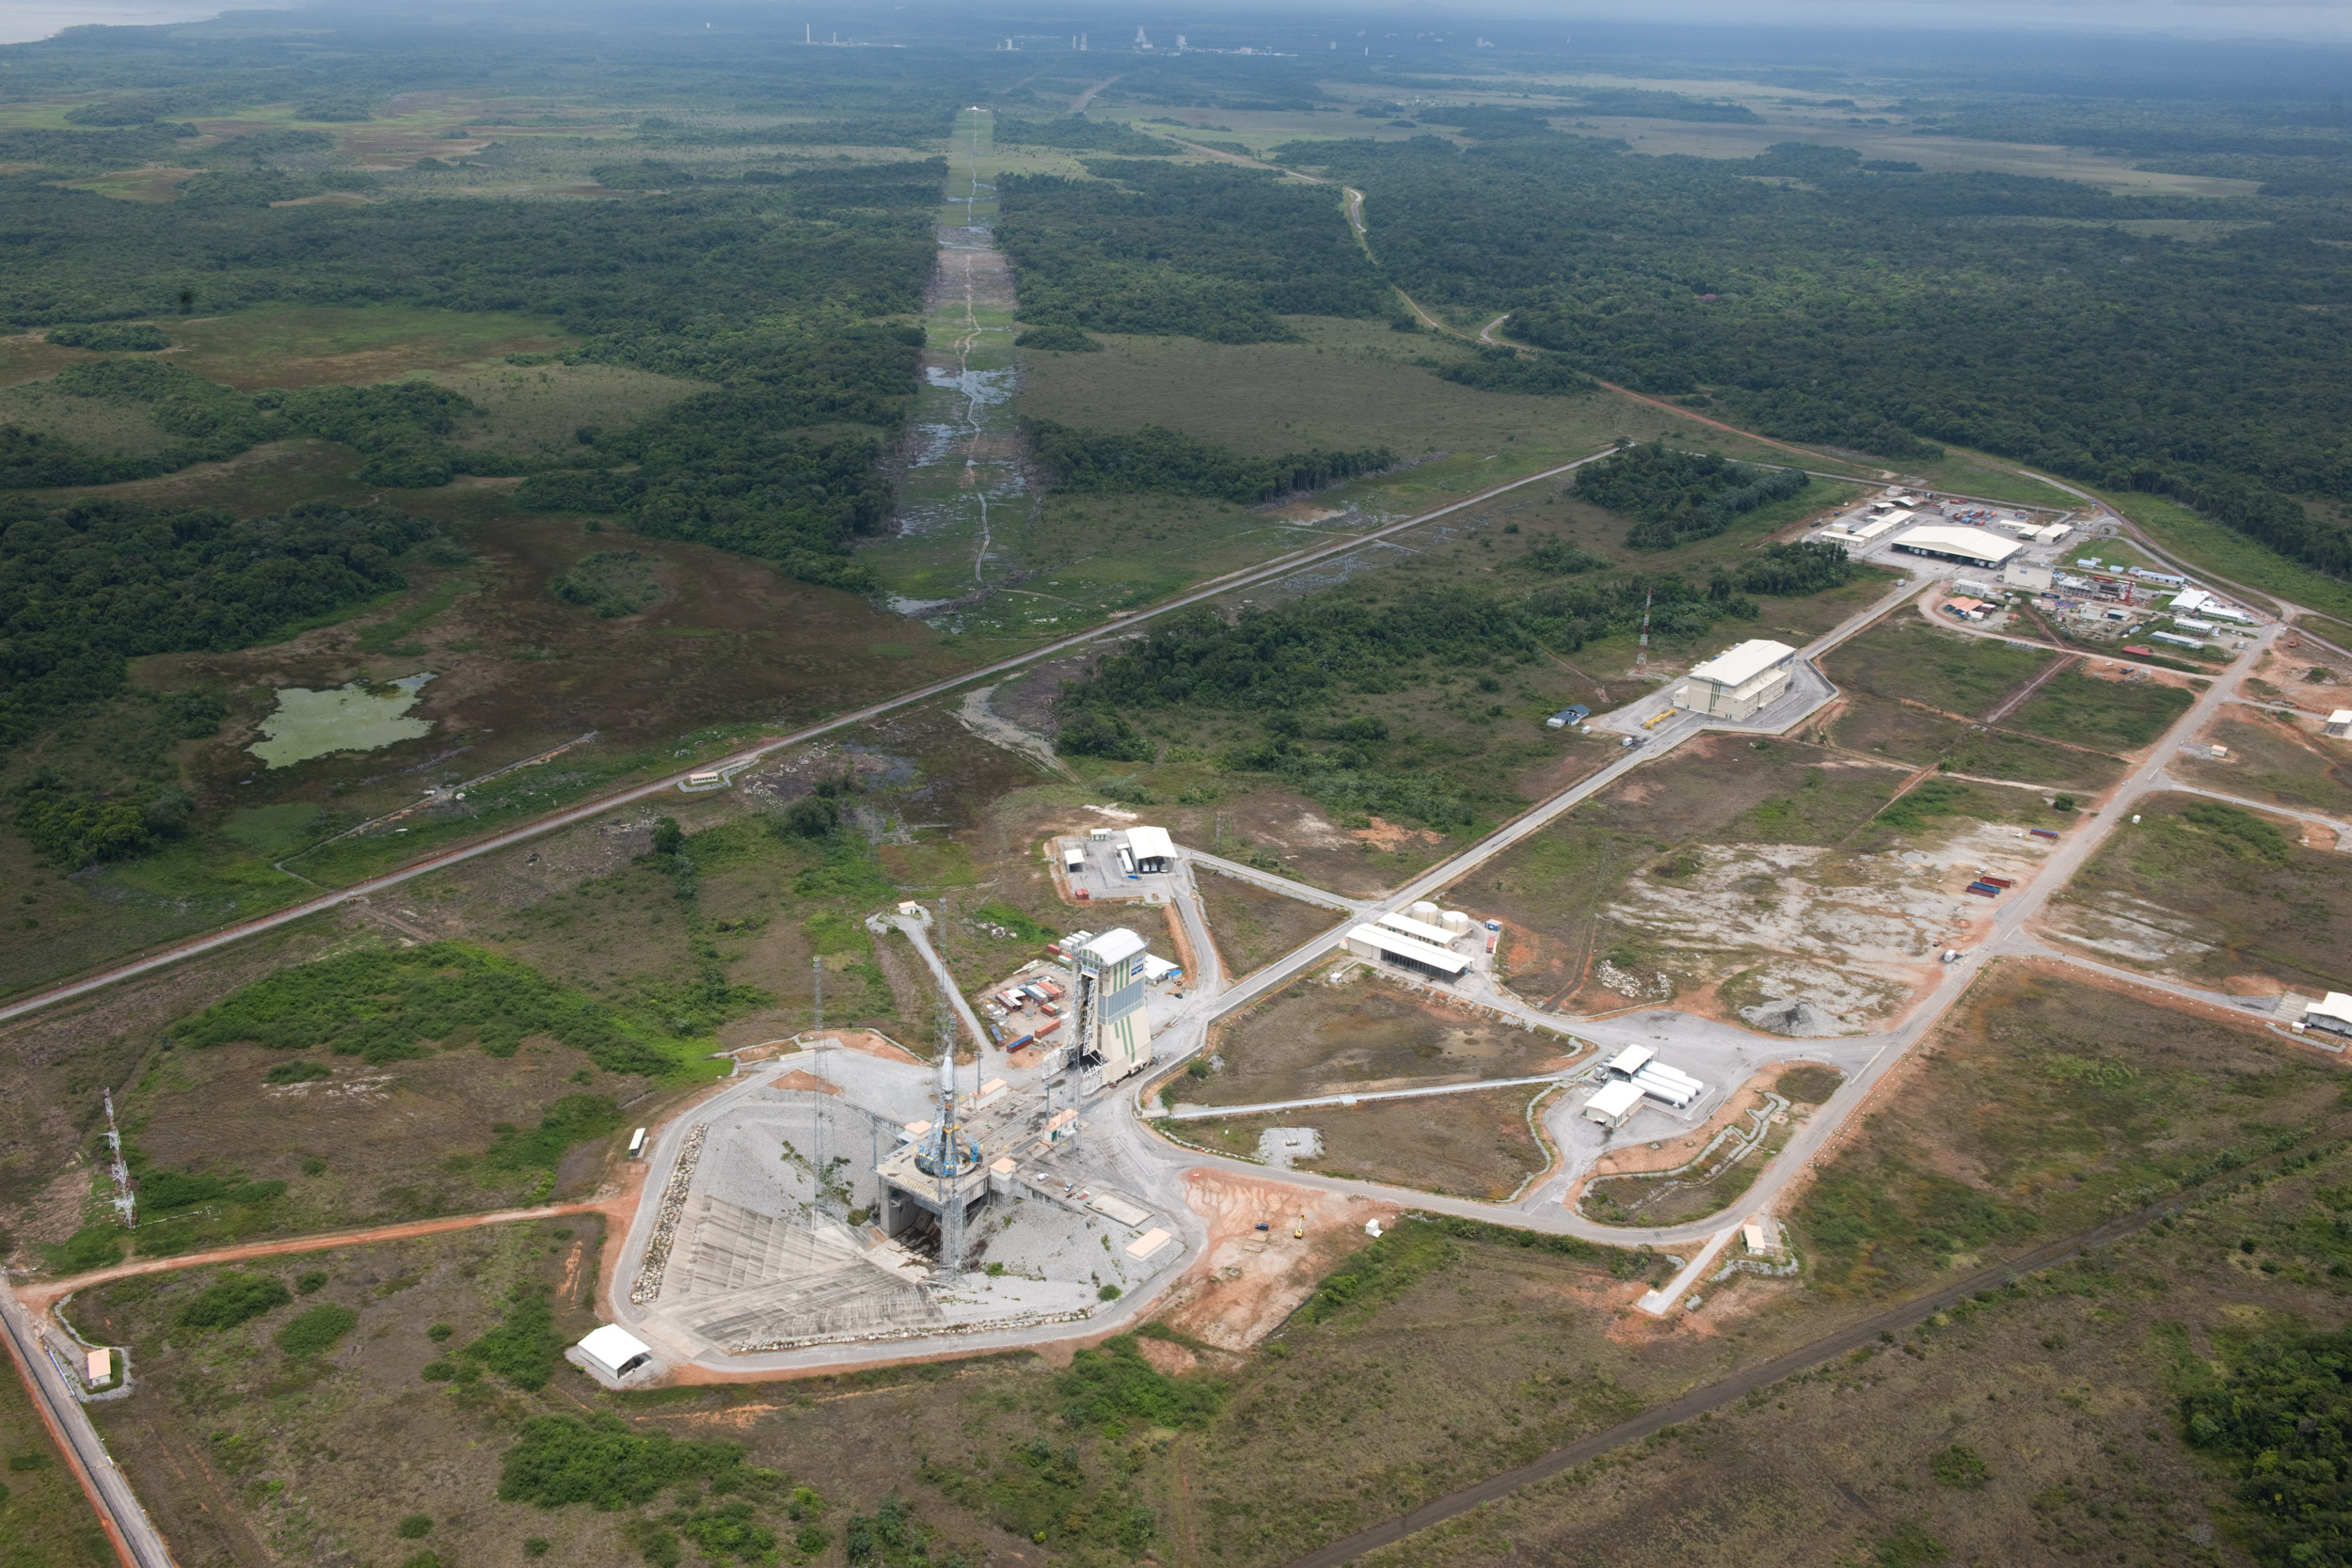 Vue aérienne des installations Soyouz du CSG. On distingue, dans le fond, les installations dédiées à Ariane 5. © Esa/S. Corvaja 2011